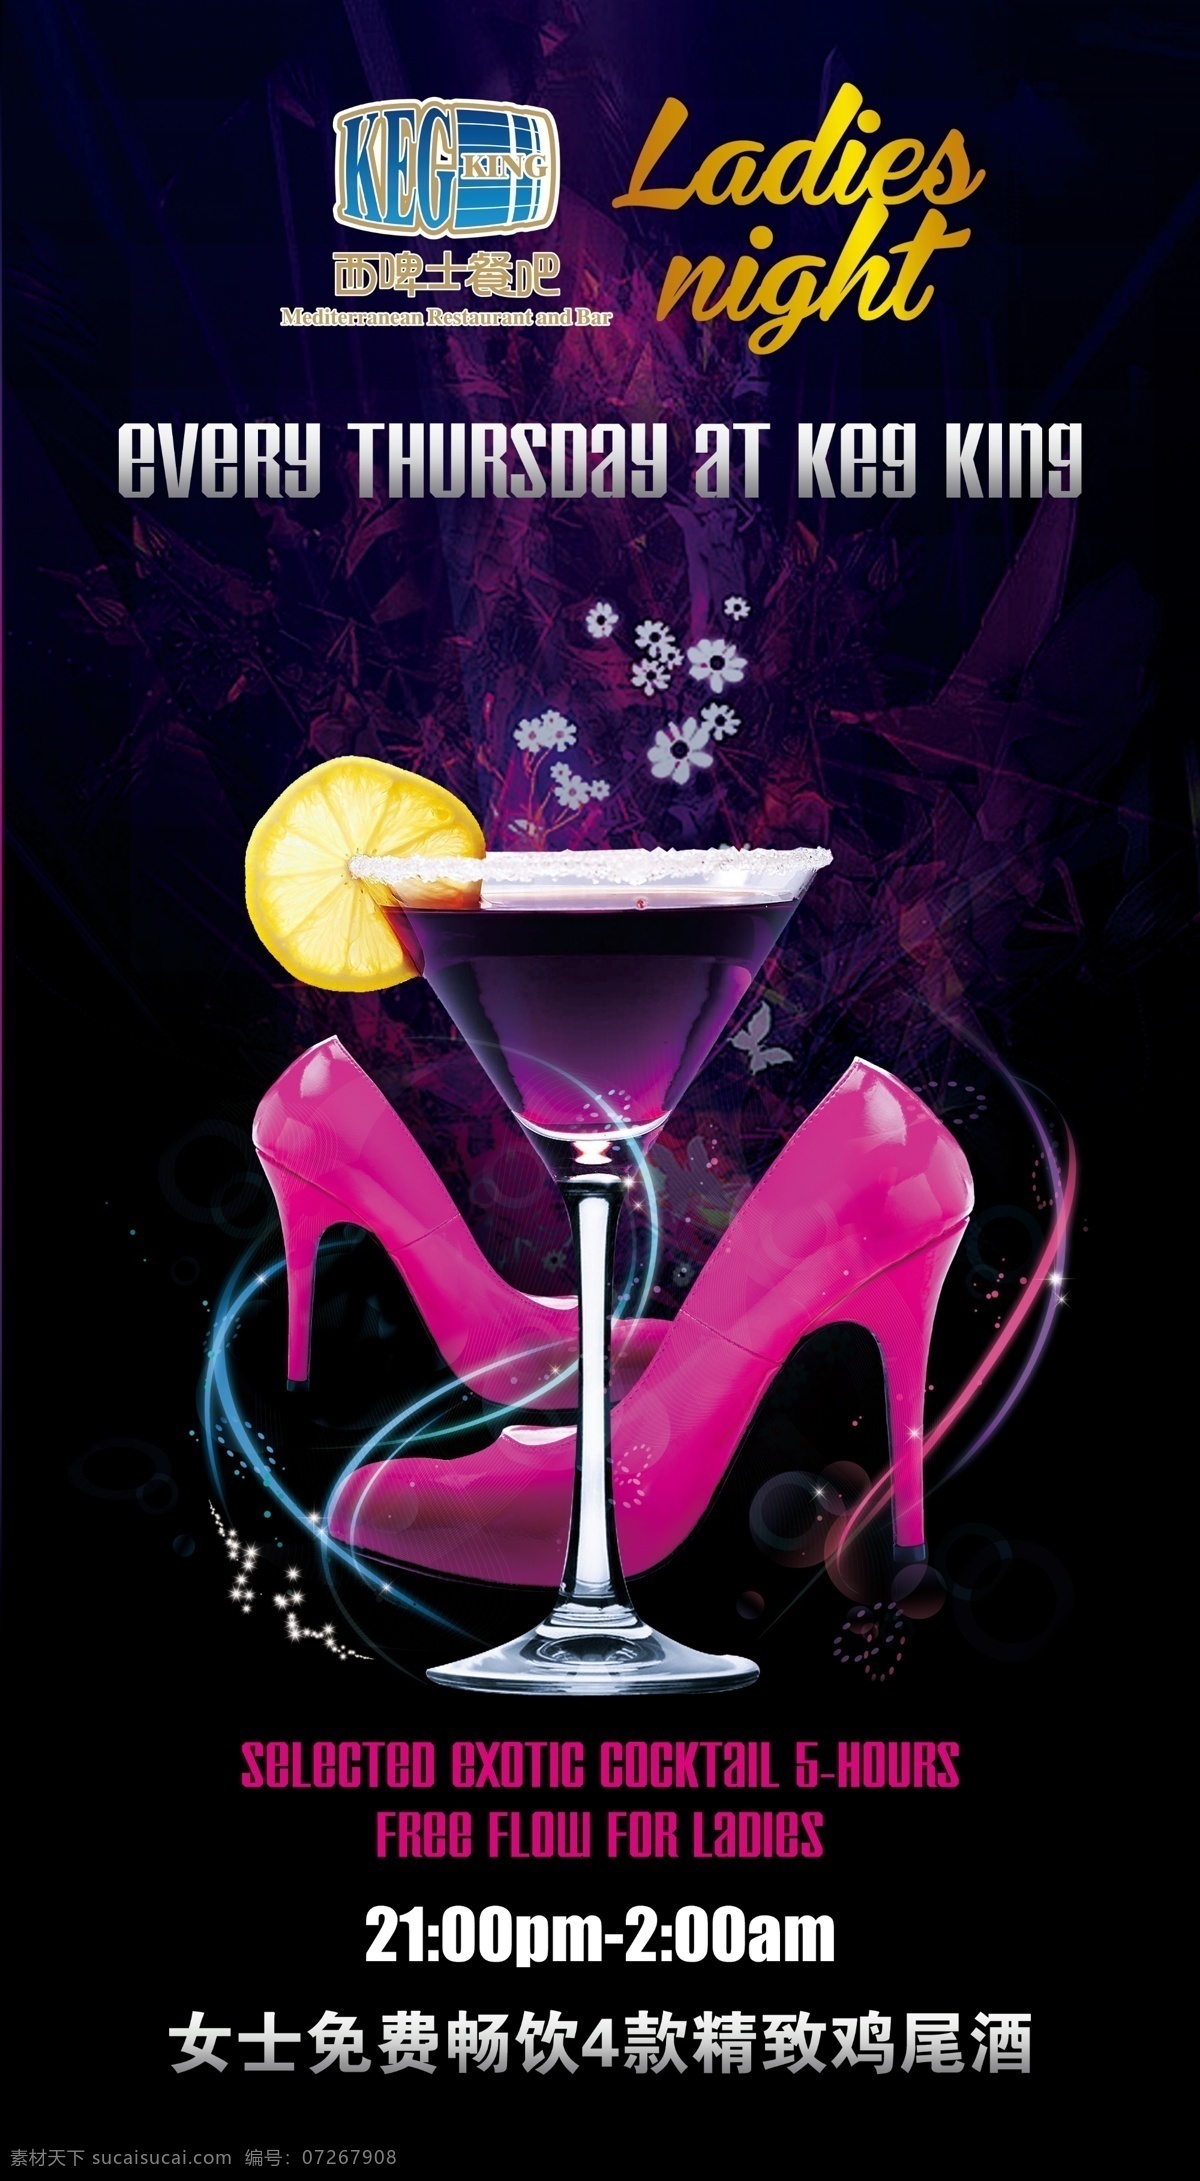 酒吧海报 高跟鞋 酒杯 鸡尾酒 柠檬 光线 光芒 花朵 女士 星期四 2013 美女之夜 ktv唱歌 广告设计模板 源文件